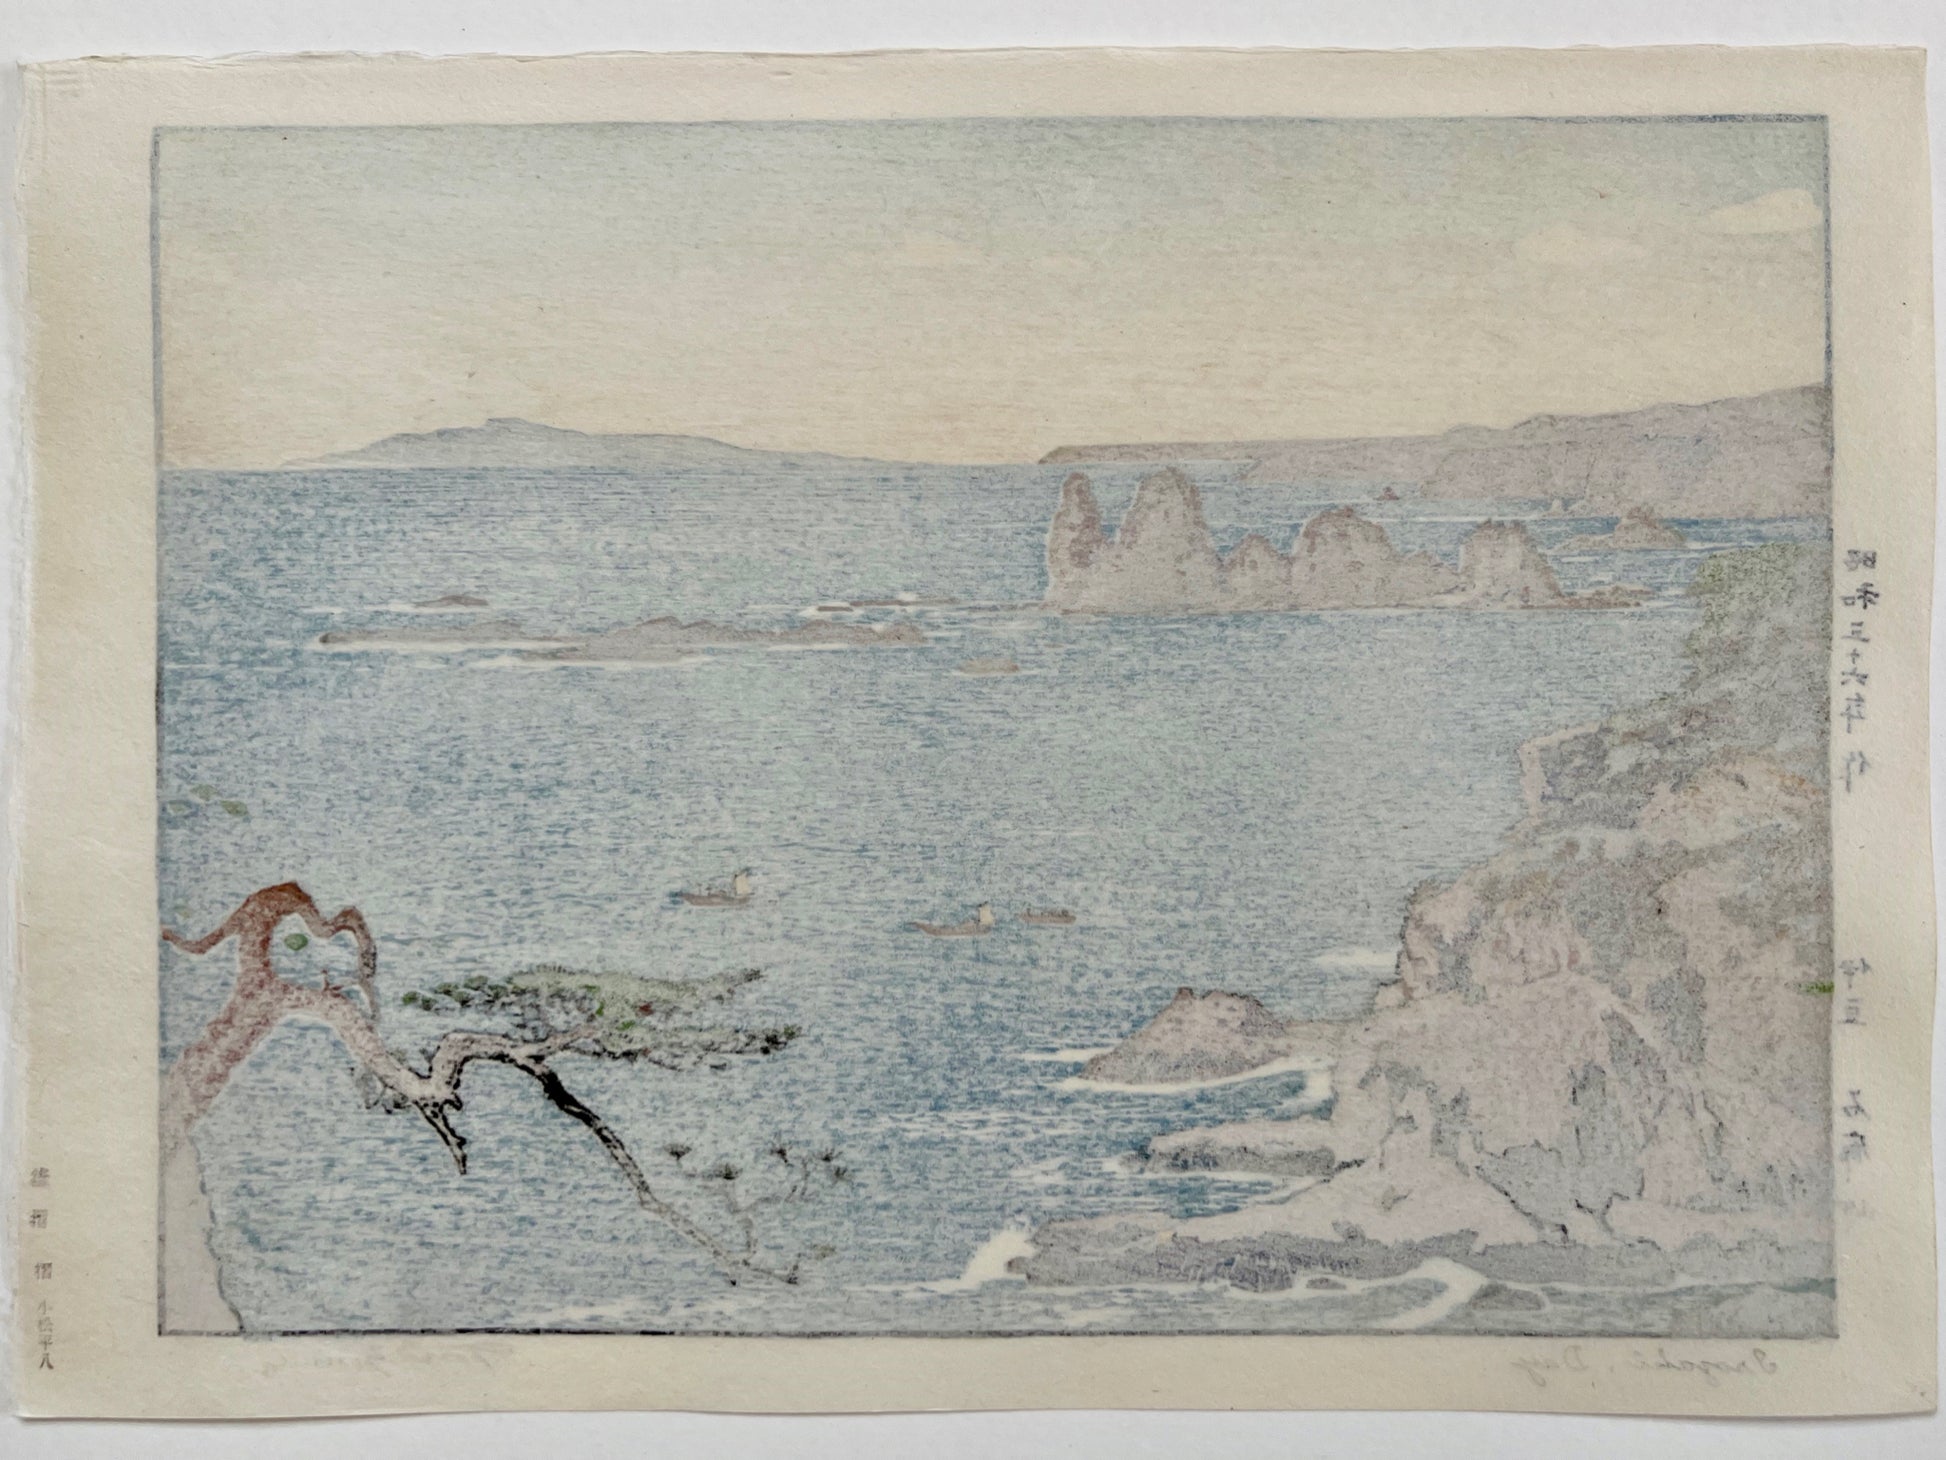 estampe japonaise paysage maritime mer bleur, rocher et pin, dos de l'estampe